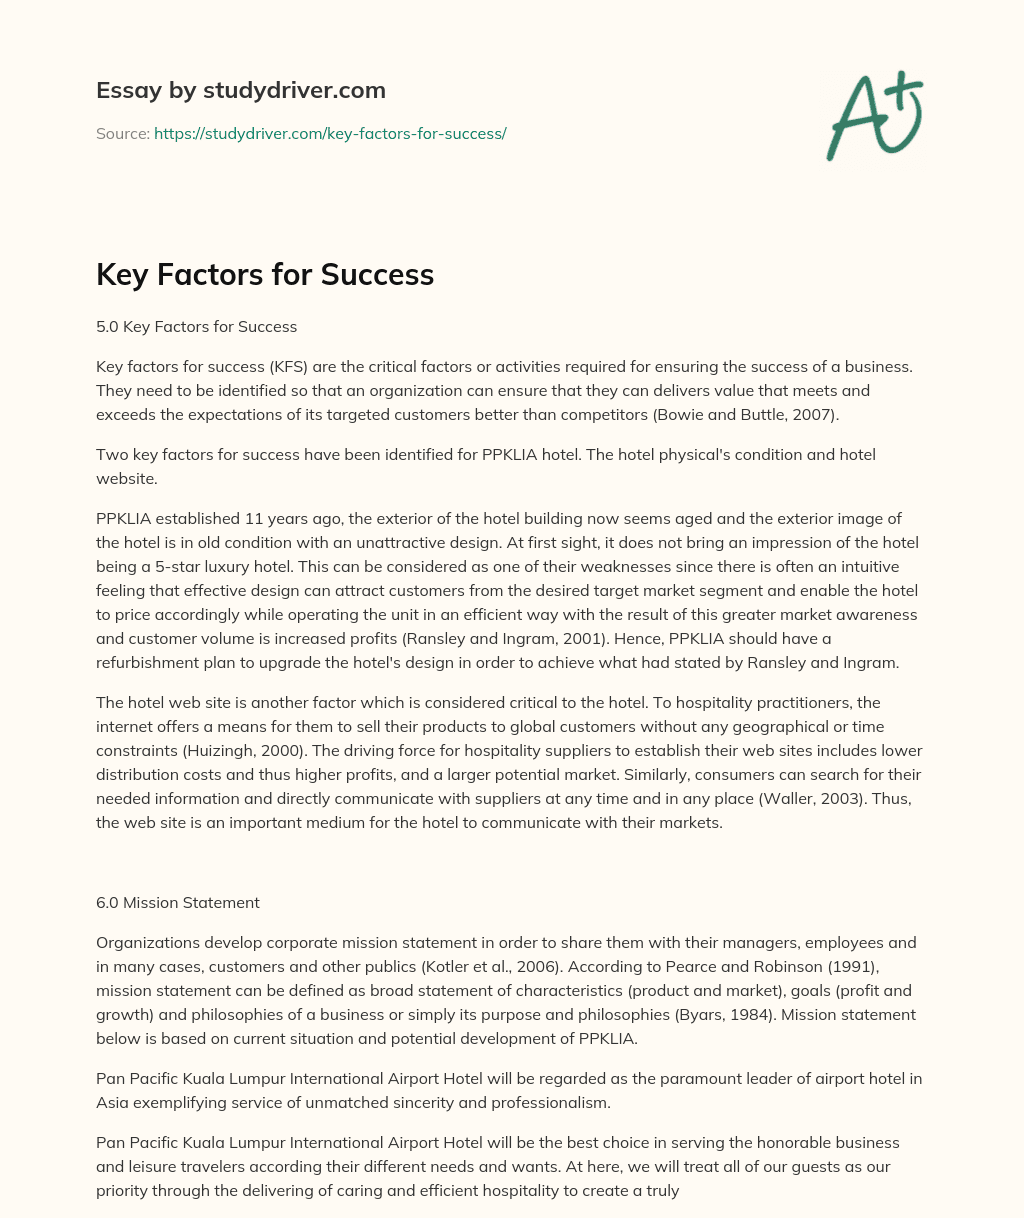 Key Factors for Success essay